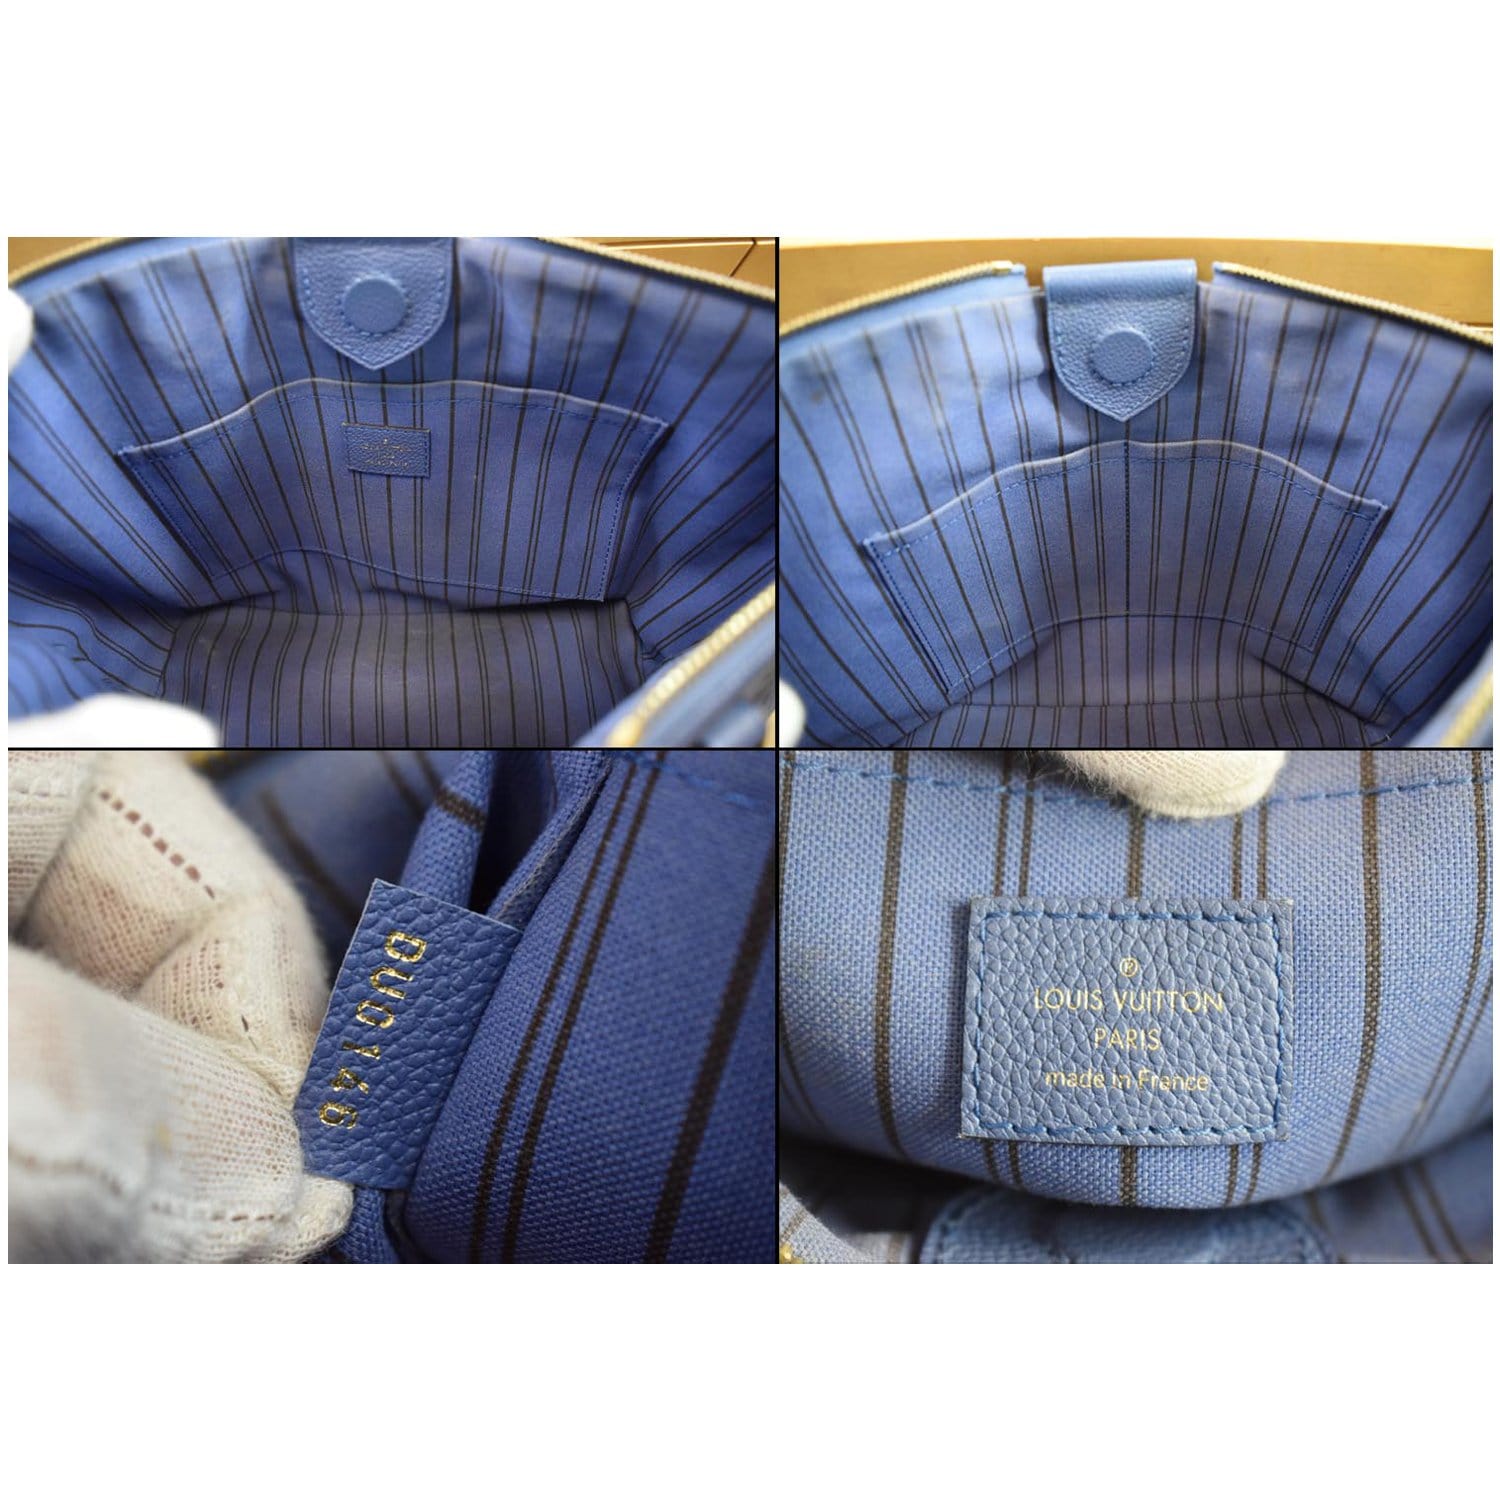 Louis Vuitton Mazarine MM Monogram Empreinte Bag Blue